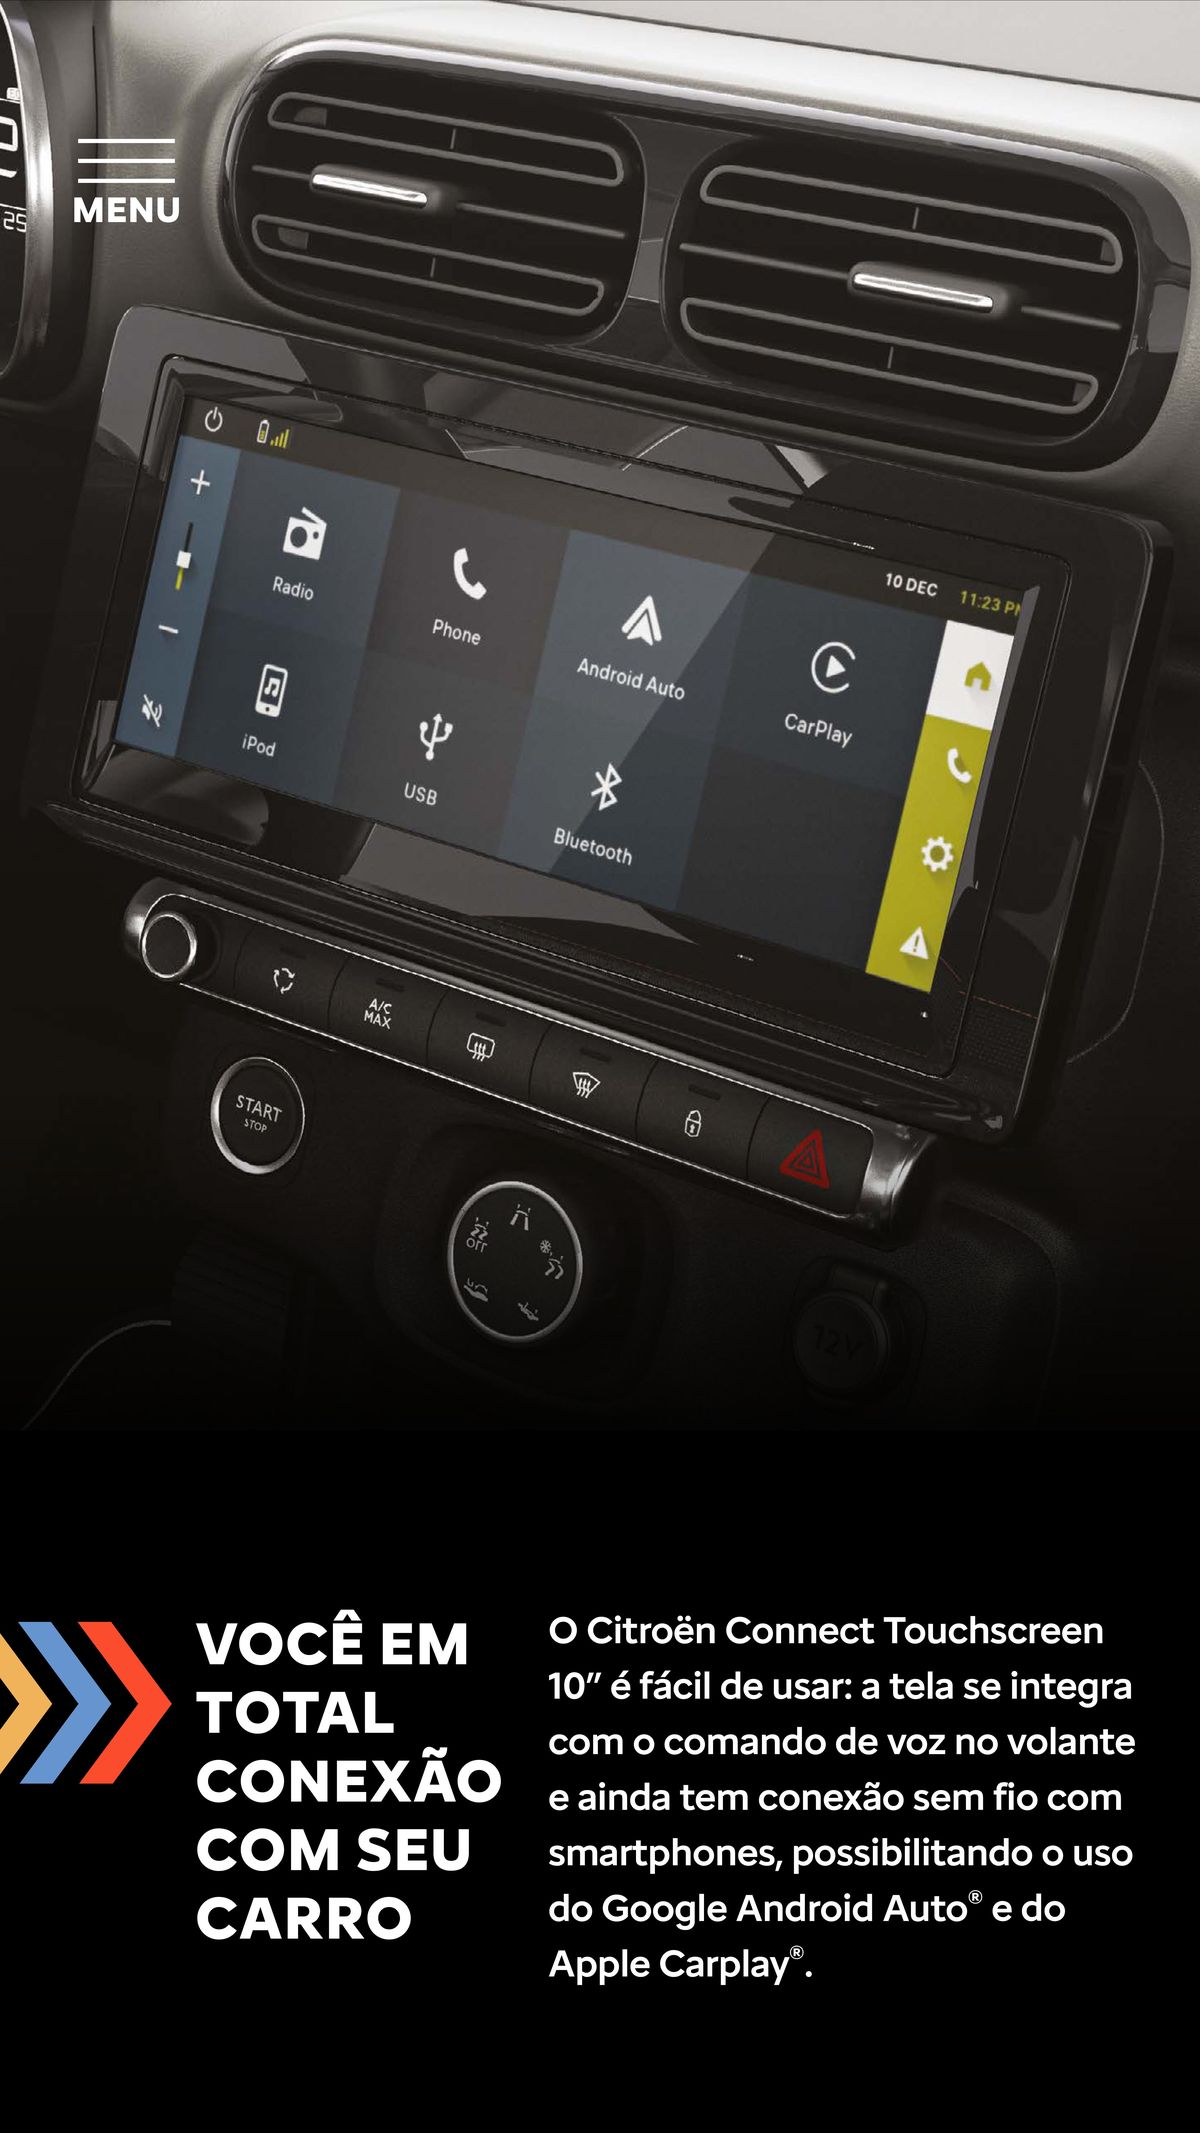 Citroën Connect Touchscreen 10” - Conecte-se ao seu carro